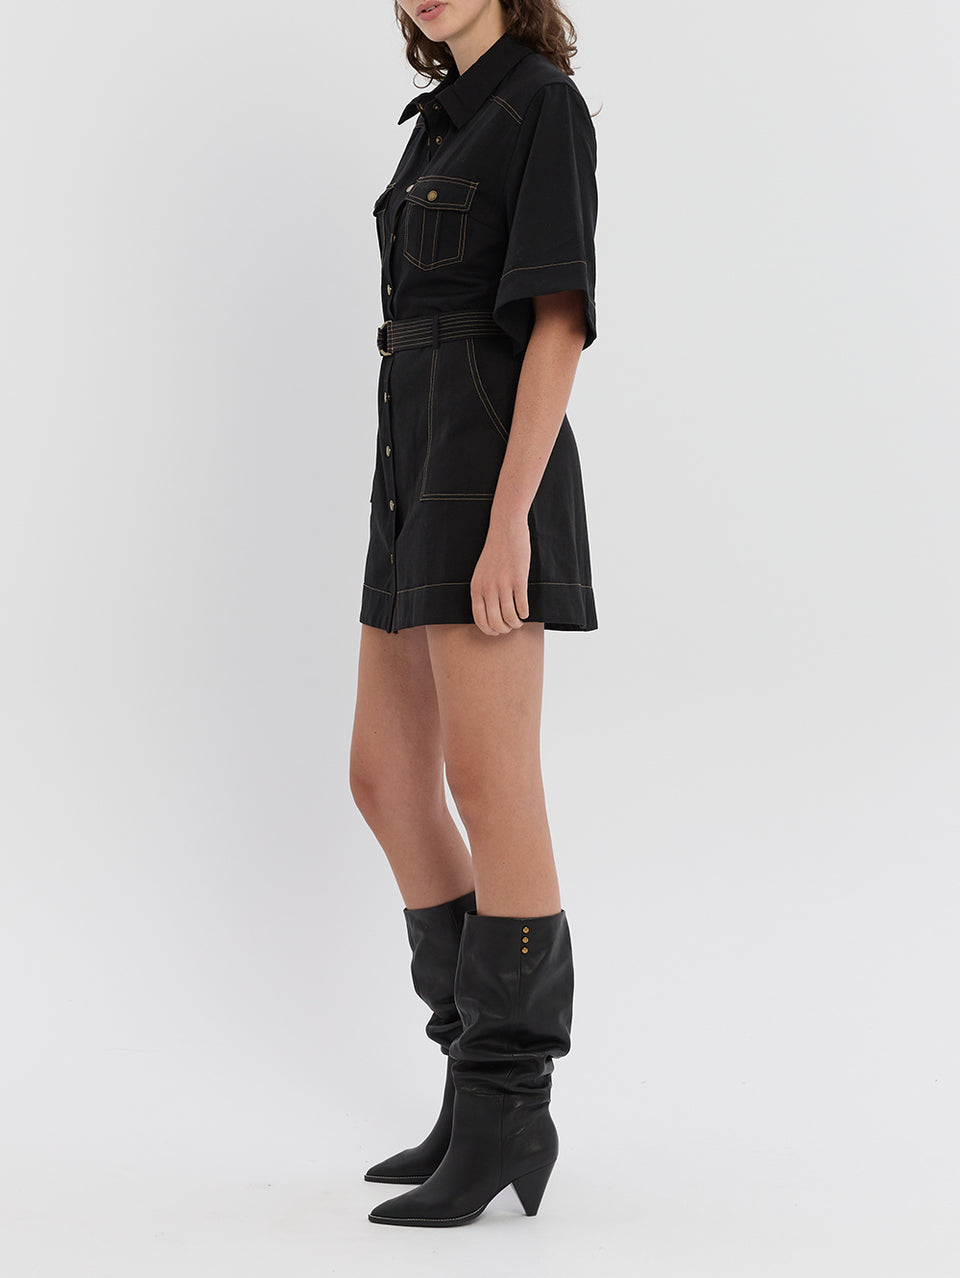 Gianna Mini Dress Black KIVARI | Model wears kimono style mini dress side view